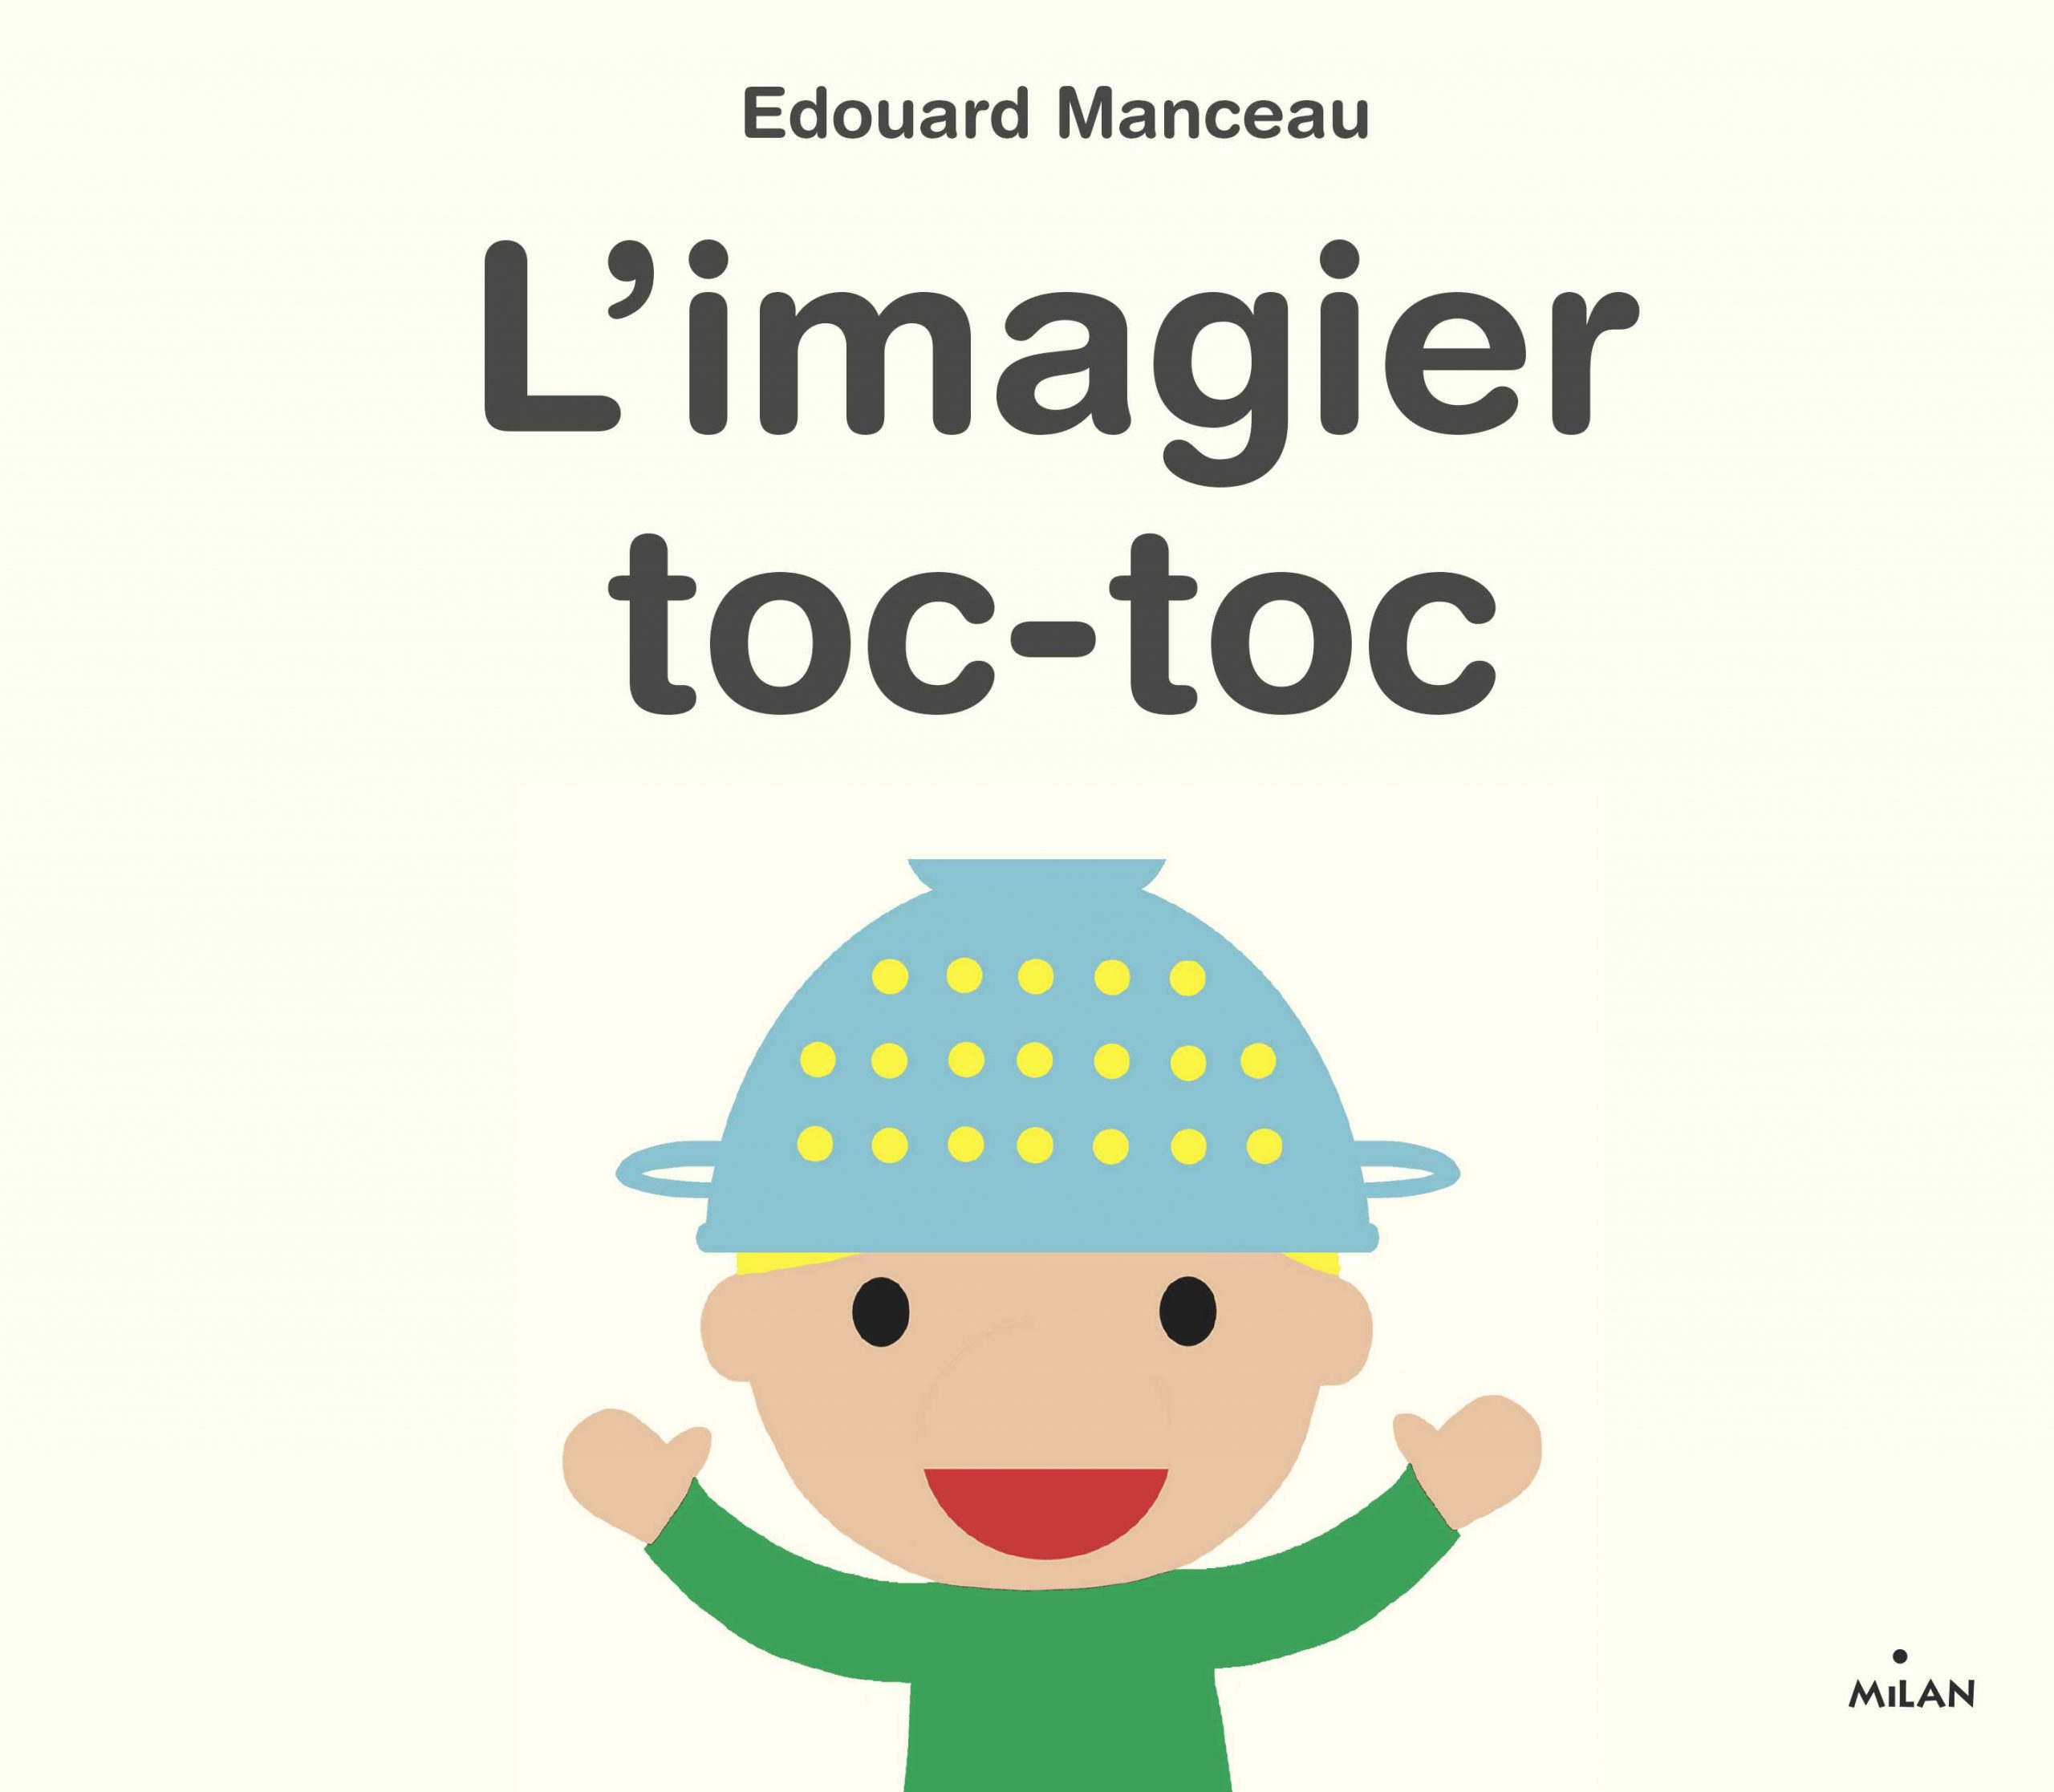 Couverture de L'Imagier toc-toc d'Edouard Manceau, un livre décalé qui fera rire petits et grands.